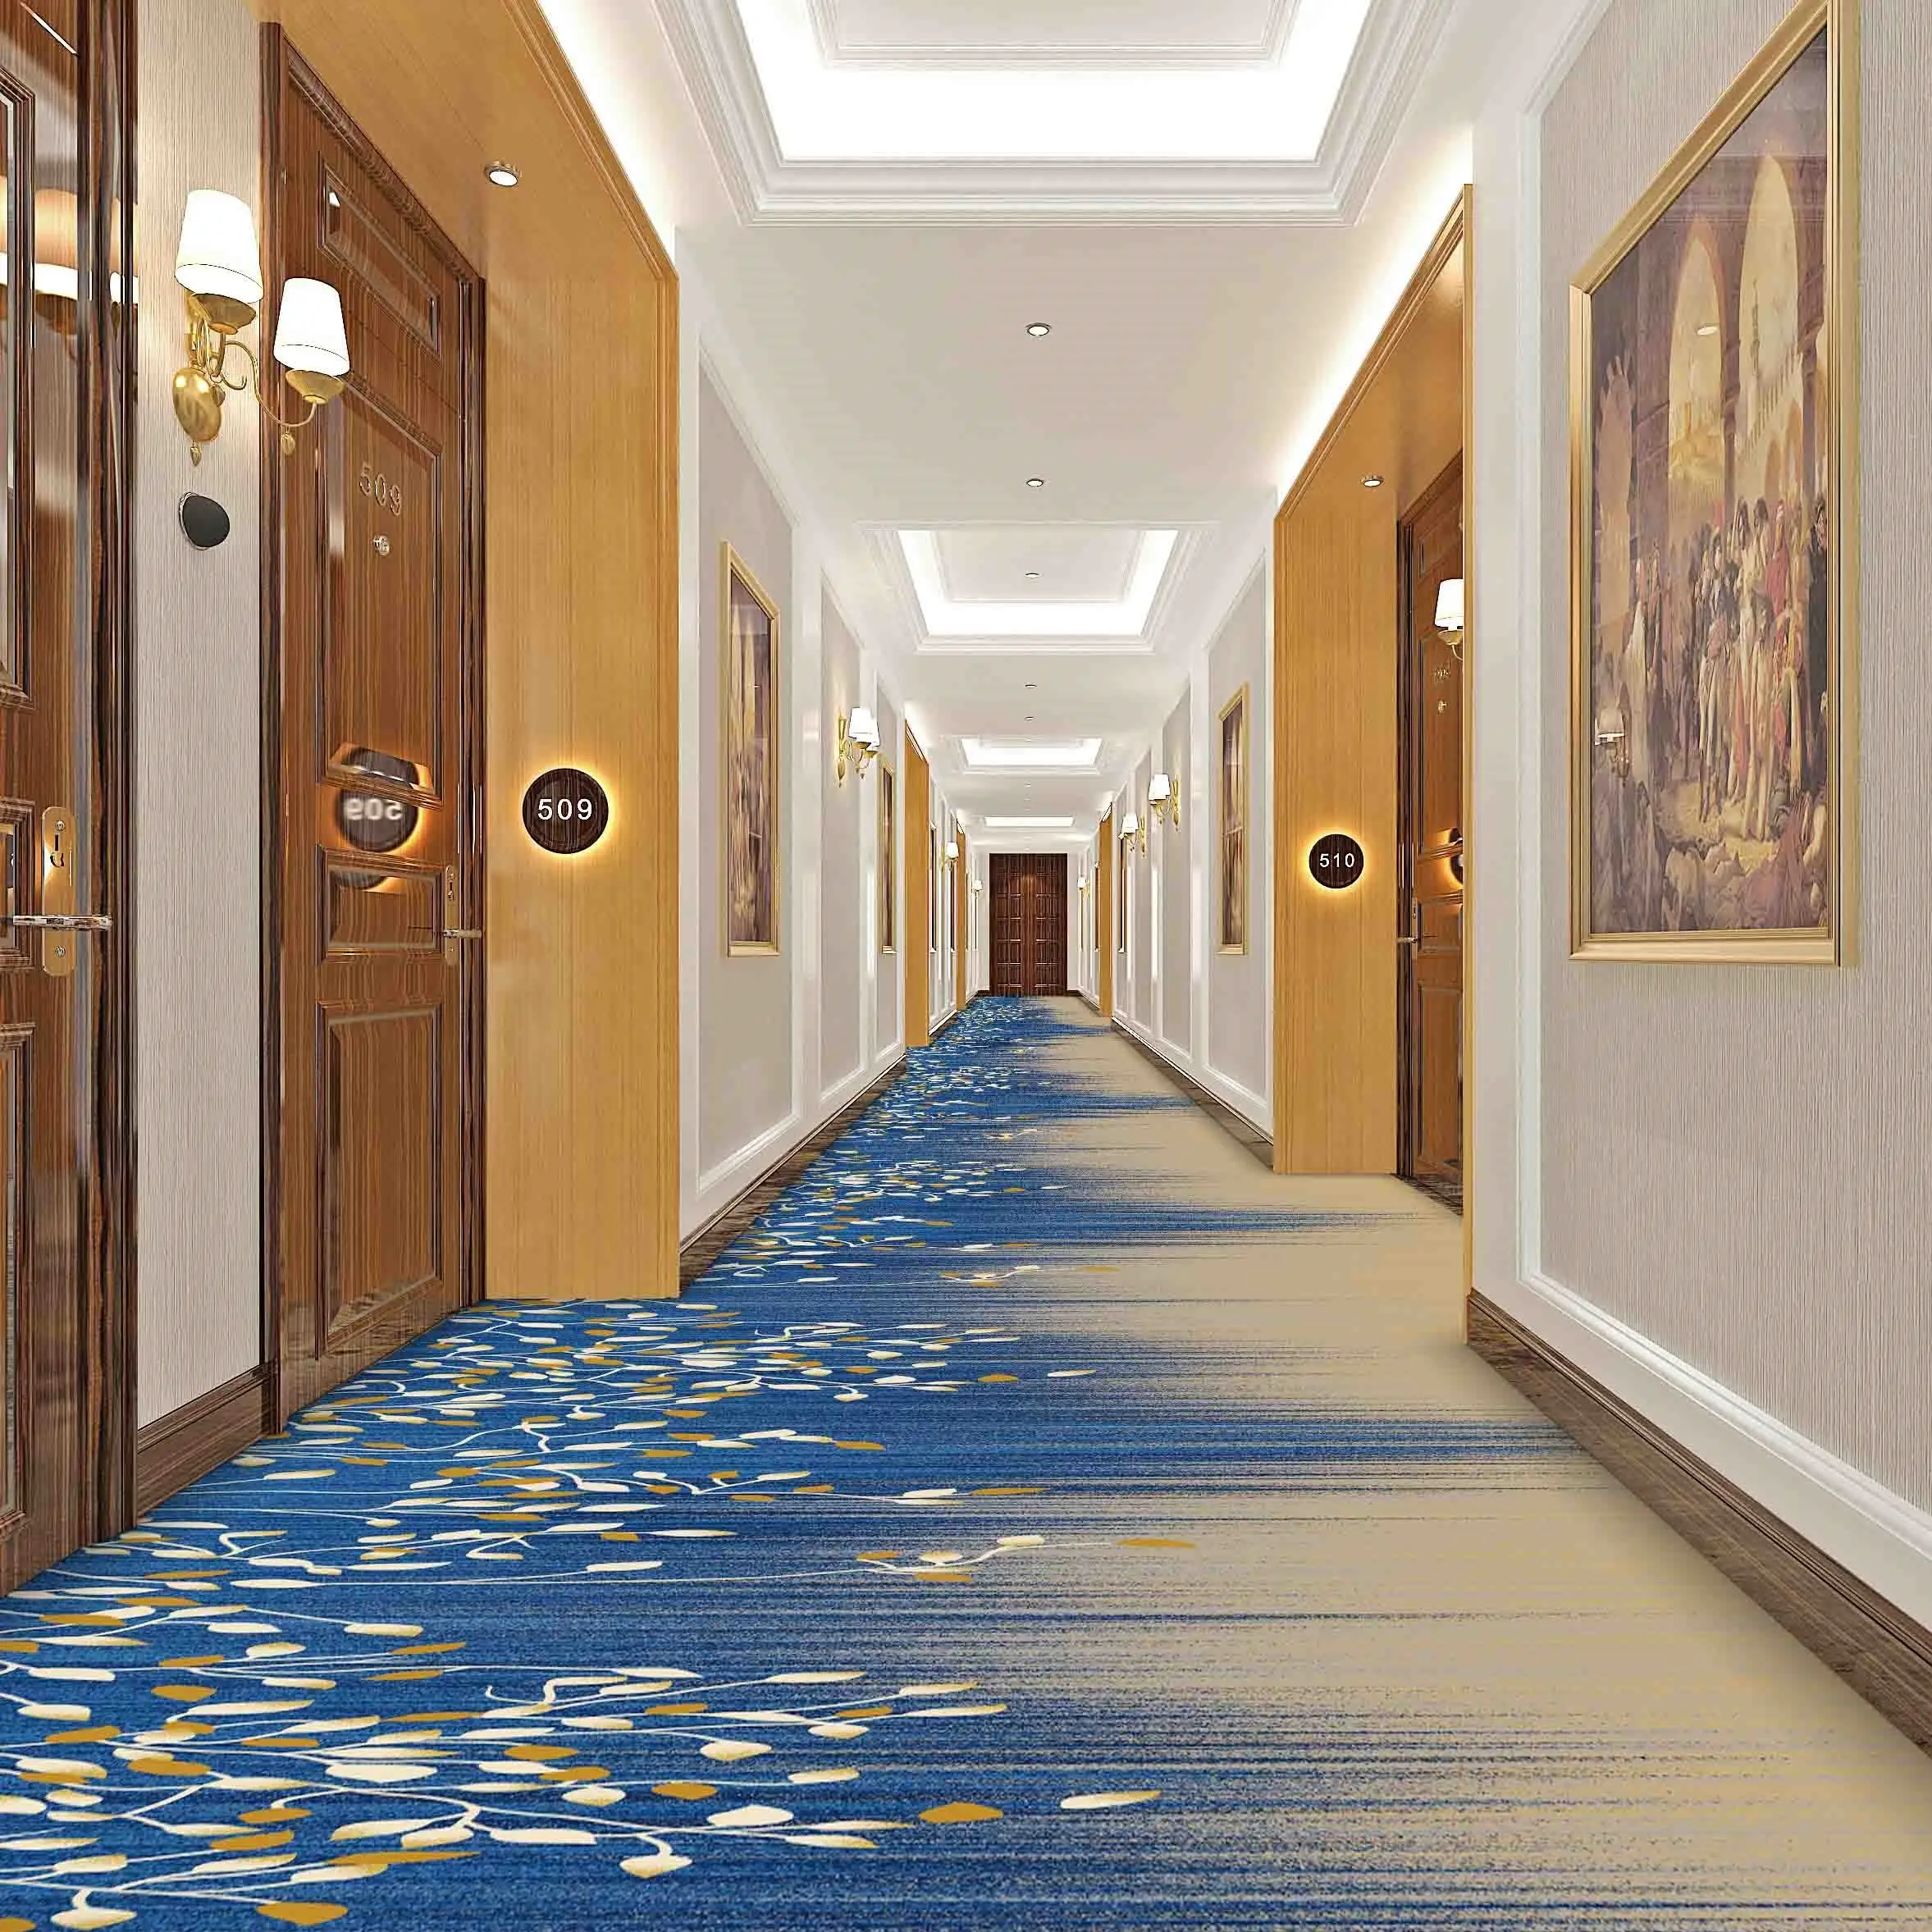 Koridor Hotel jalur cover penuh khusus karpet cetak bahan nilon berbagai warna dapat disesuaikan